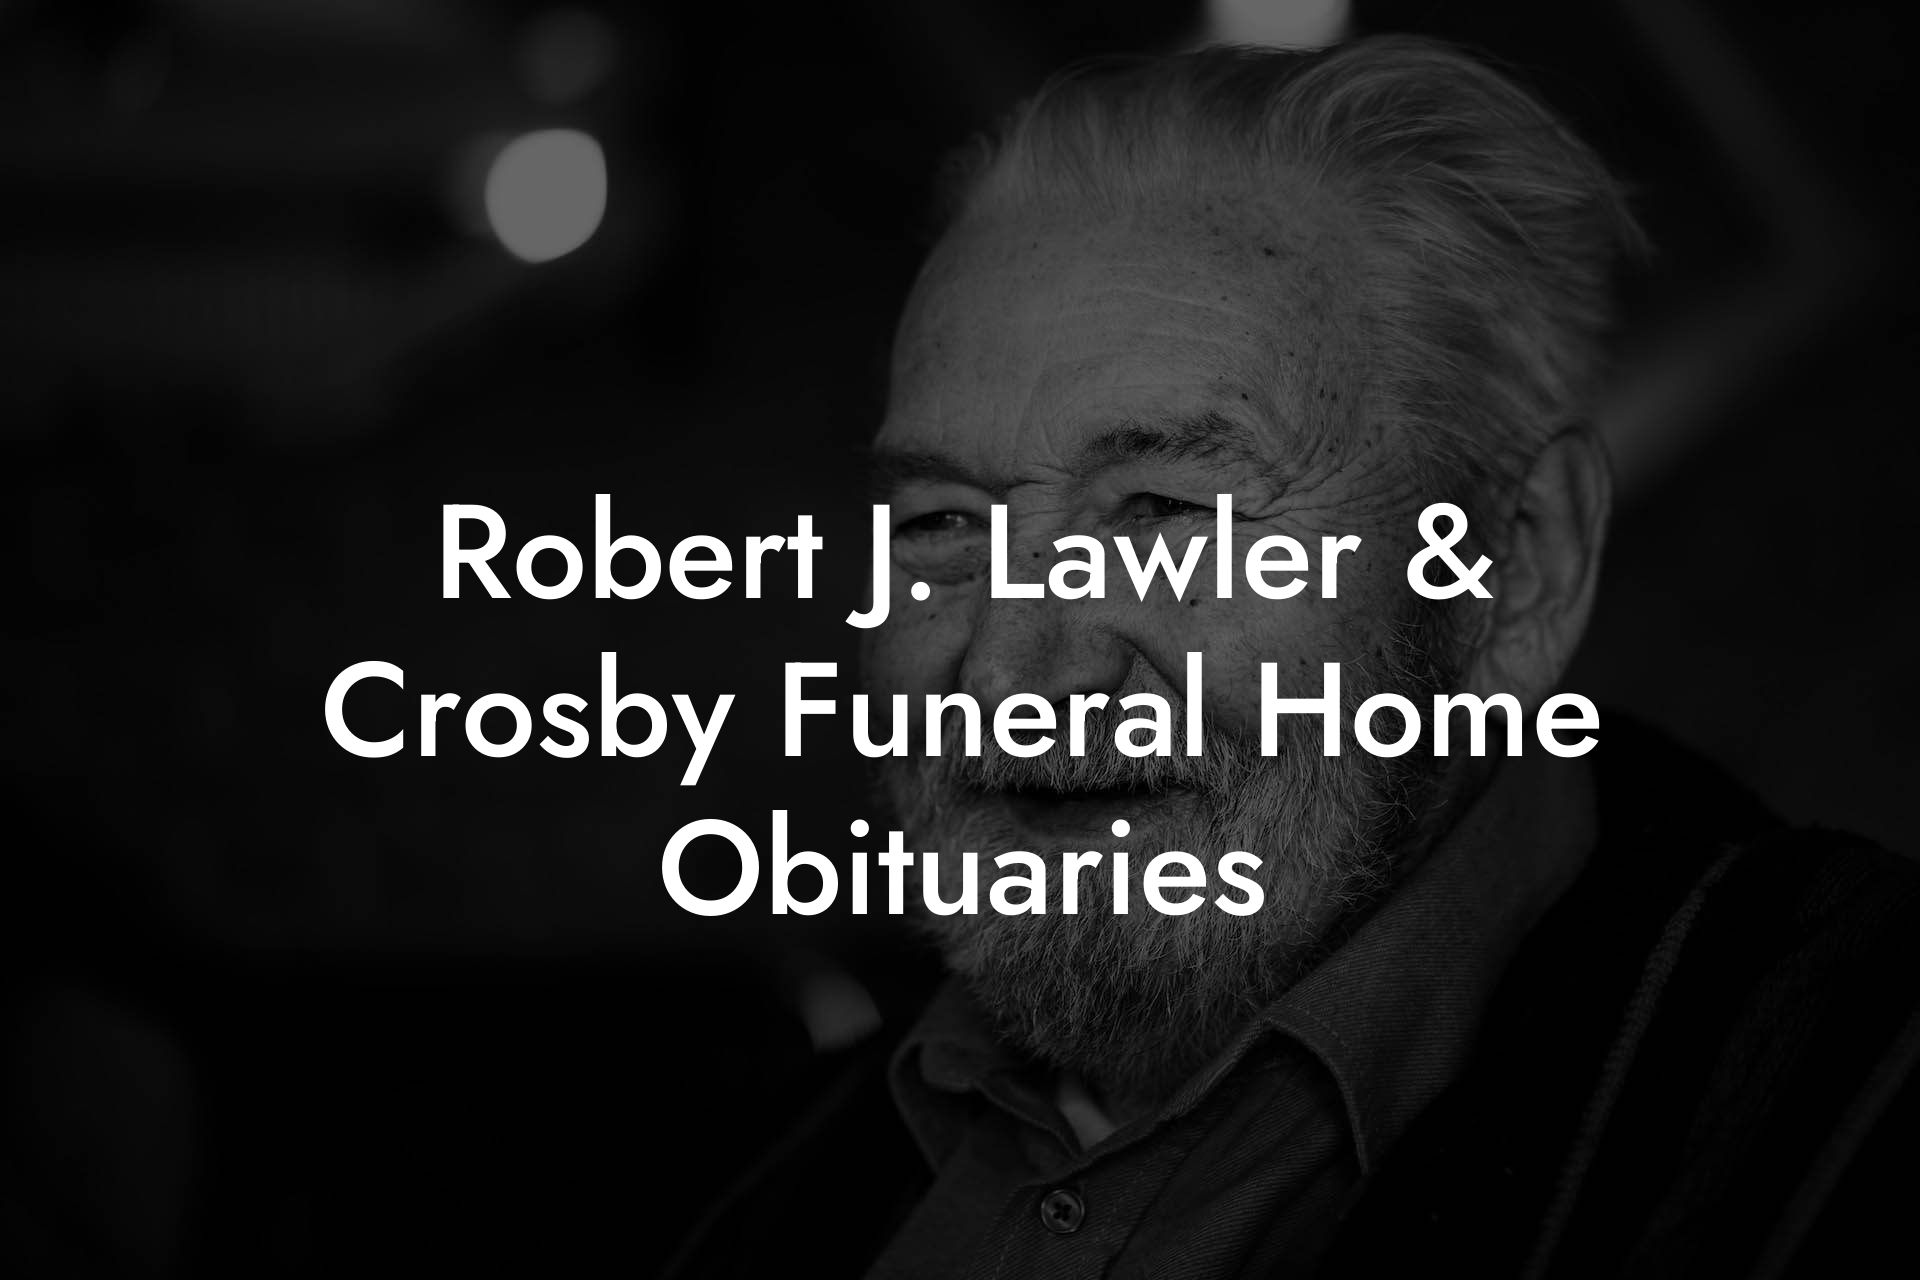 Robert J. Lawler & Crosby Funeral Home Obituaries